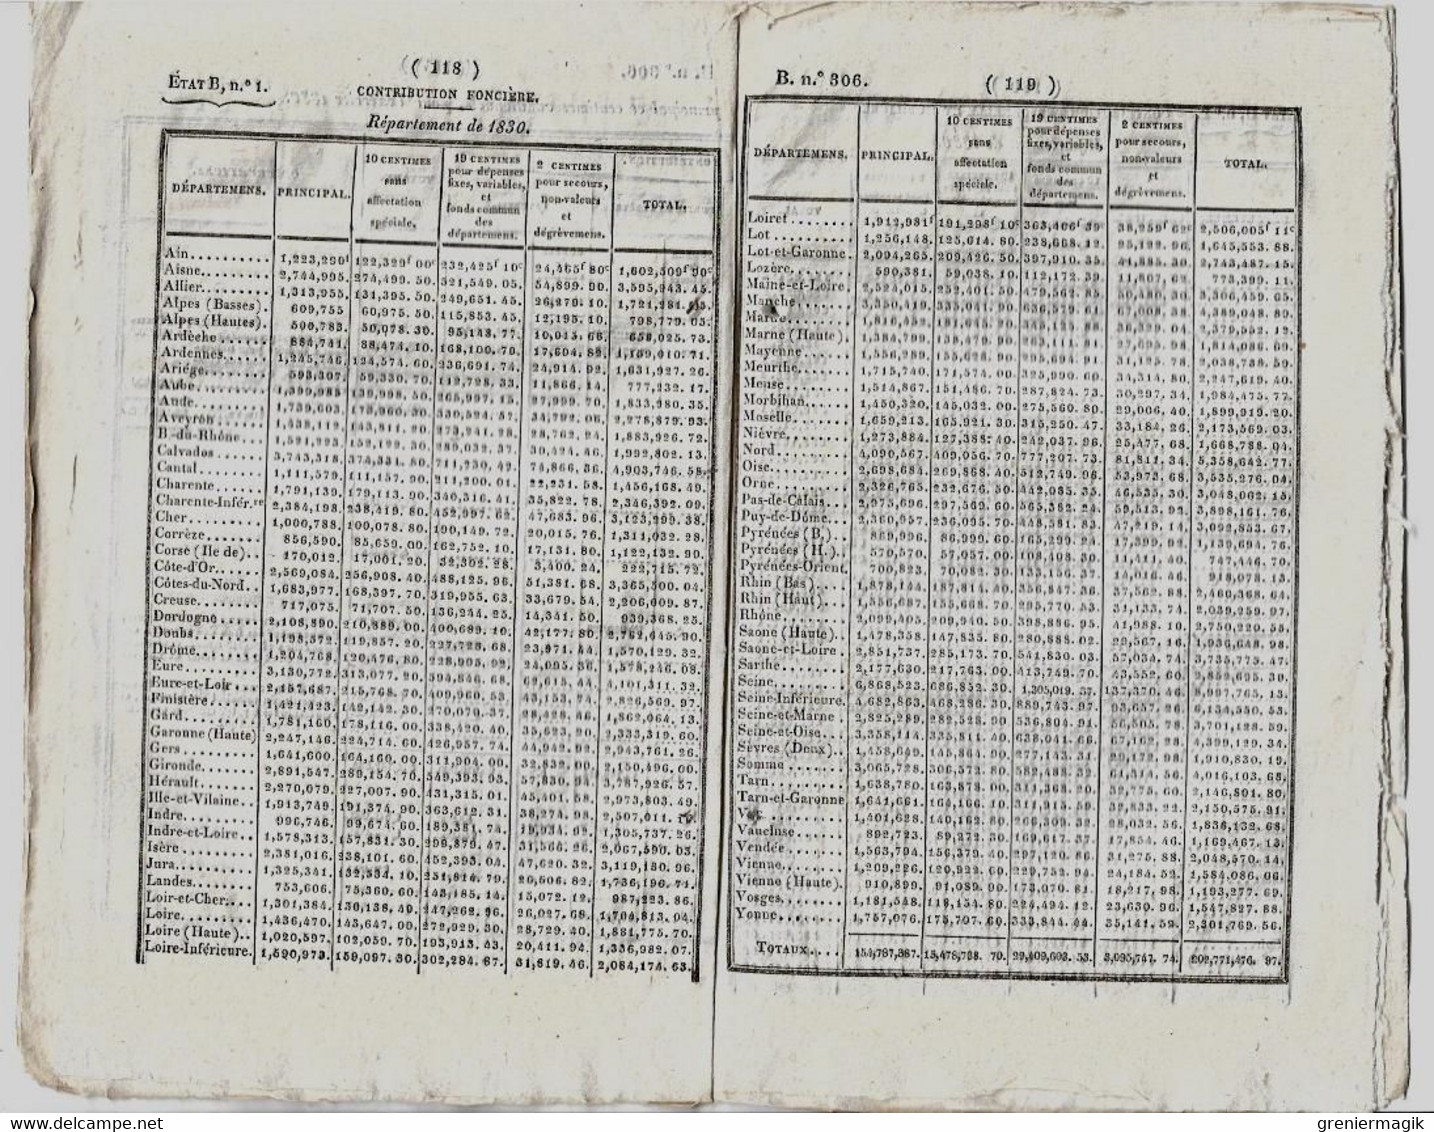 Bulletin des Lois 306 1829 Fixation du budget dépenses et recettes 1830 (Finances)/Baron Baudelet de Livois/Donations